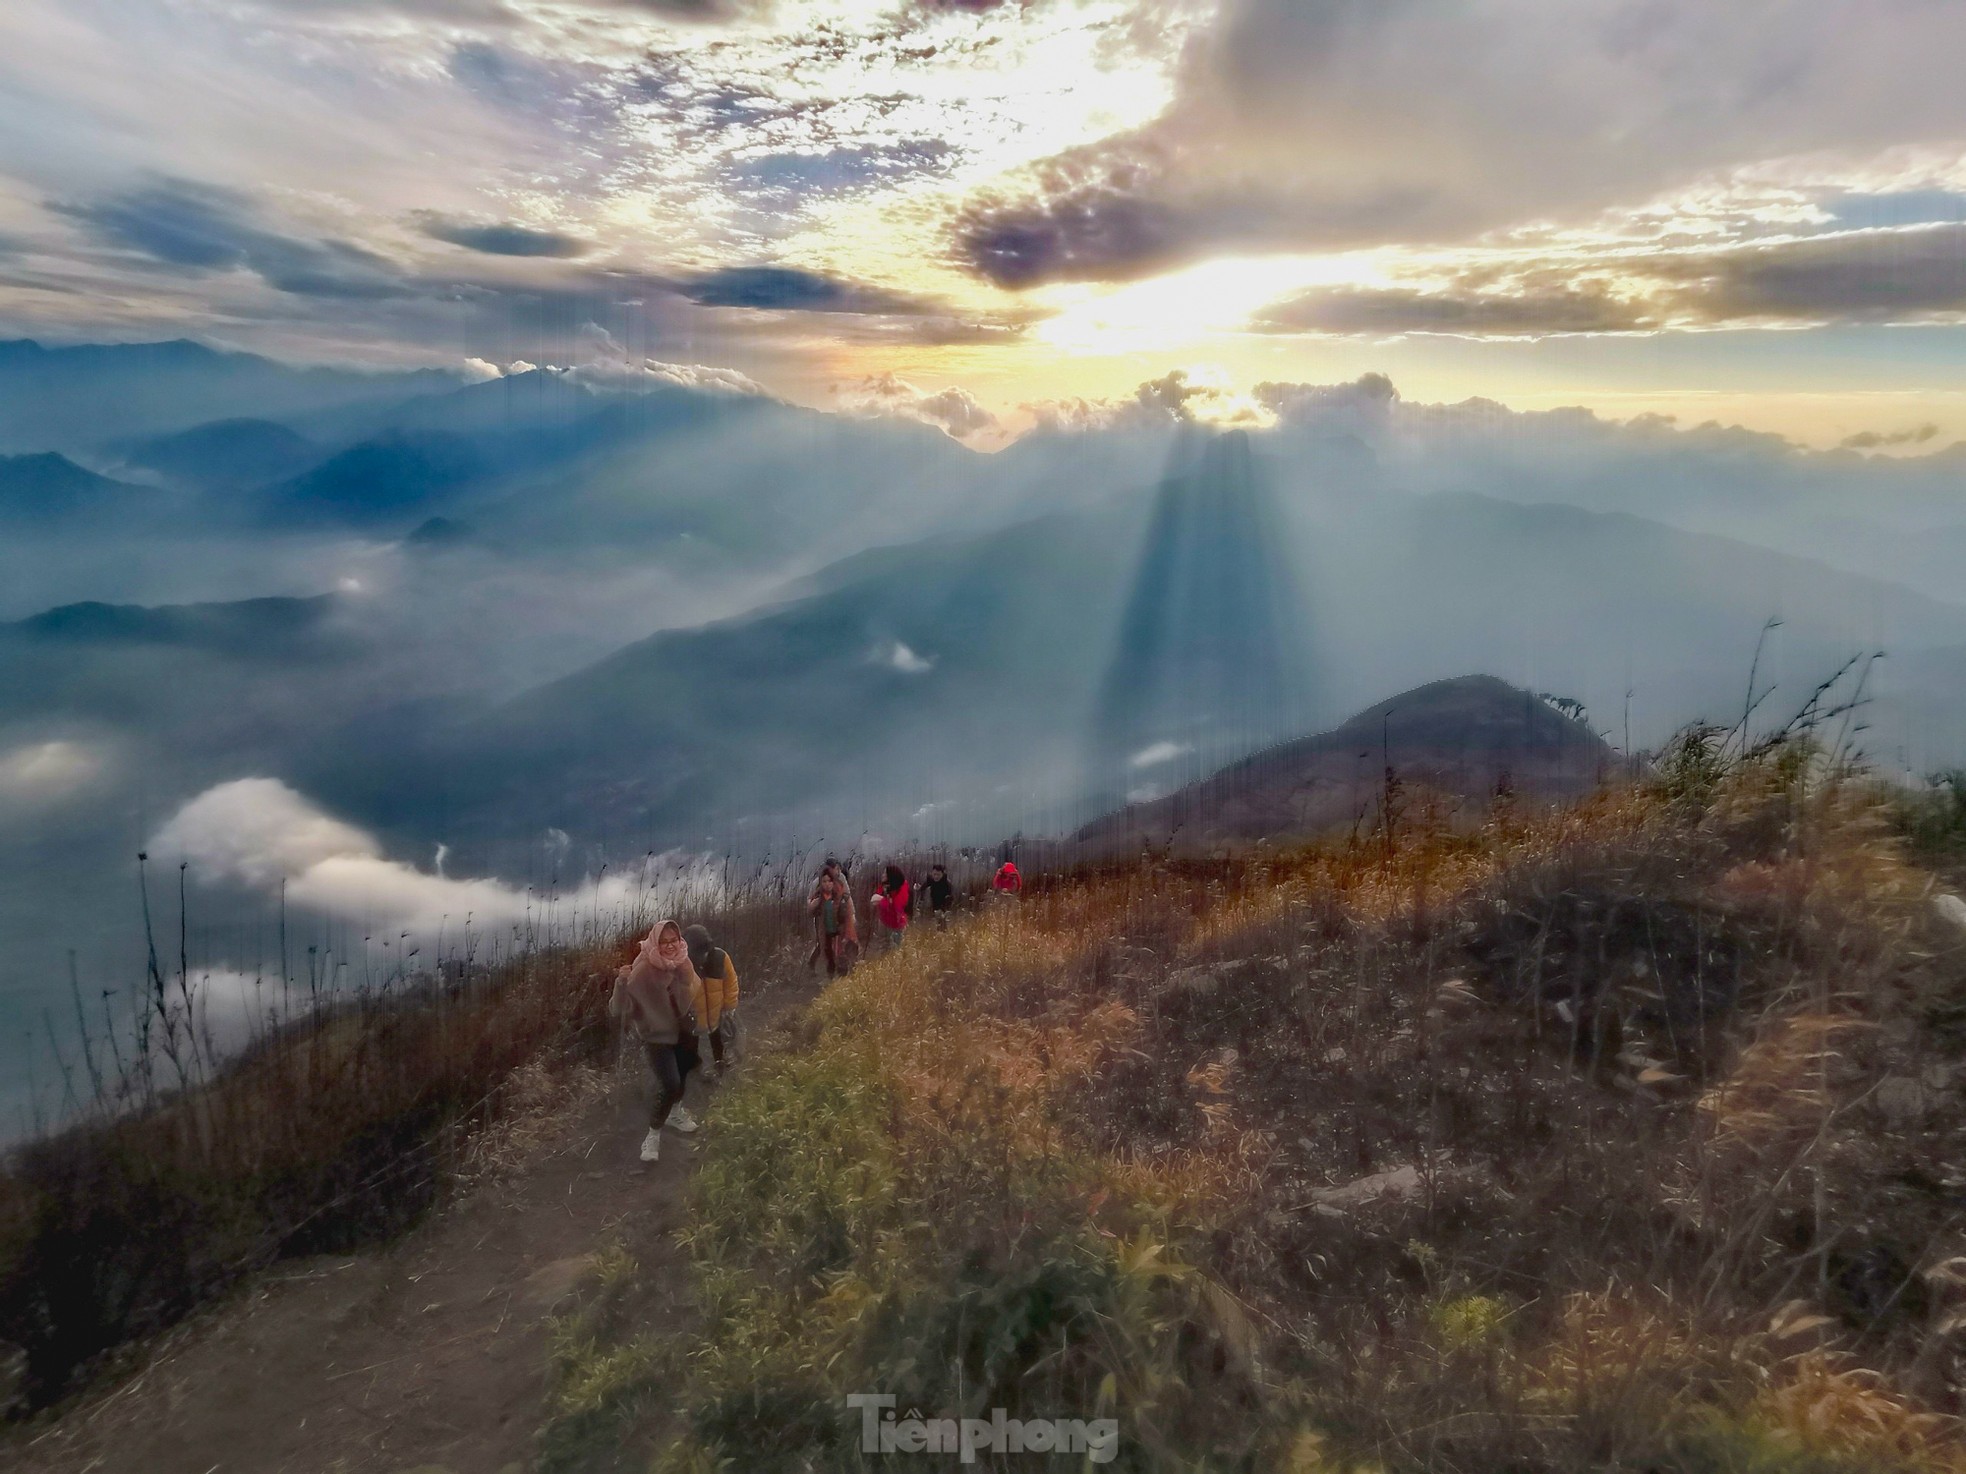 Săn mây giữa khung cảnh 'thần tiên' trên đỉnh núi Lảo Thẩn - Y Tý ảnh 2